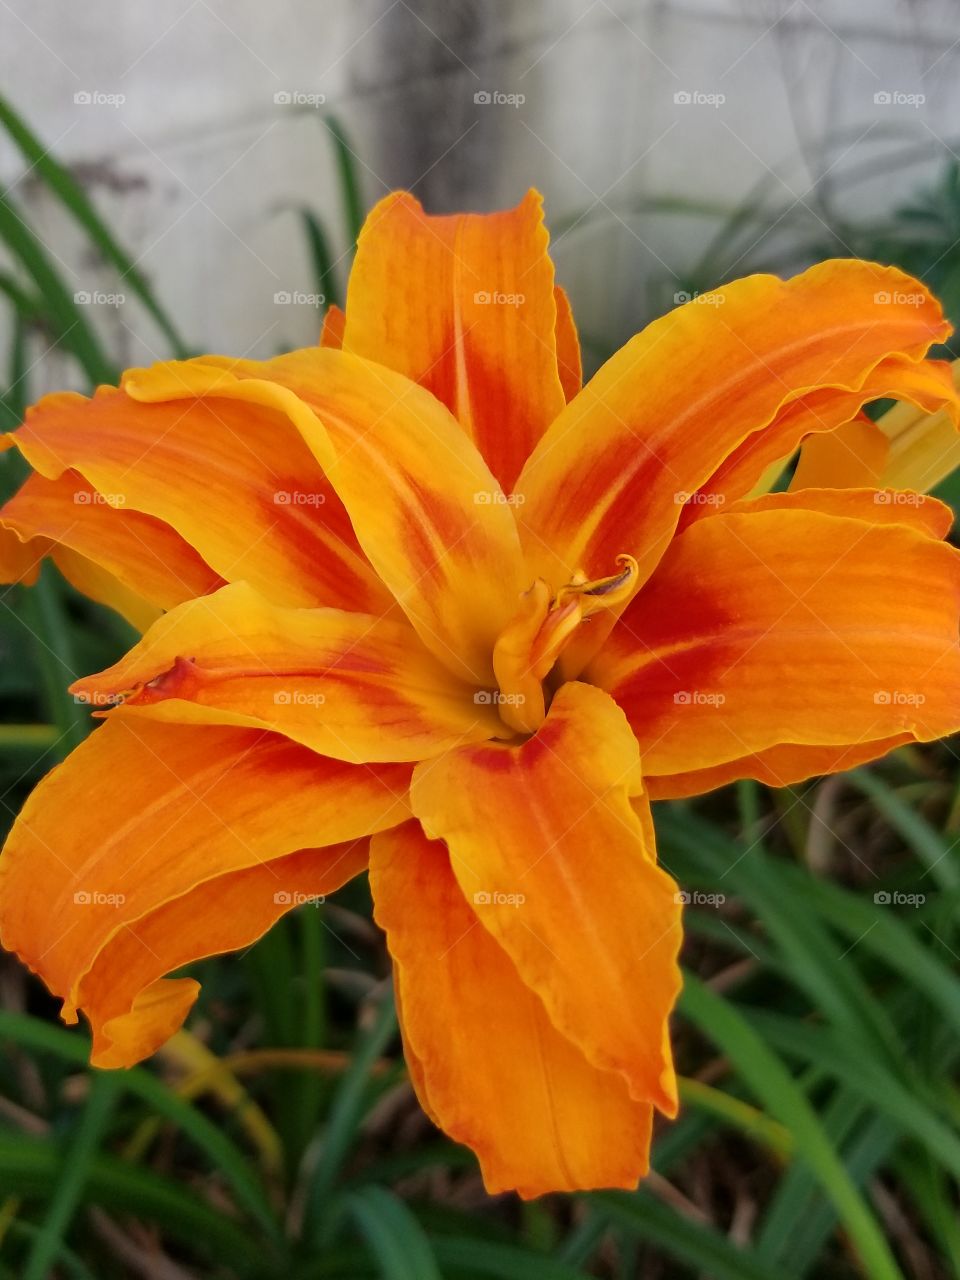 Tiger Lilly flower